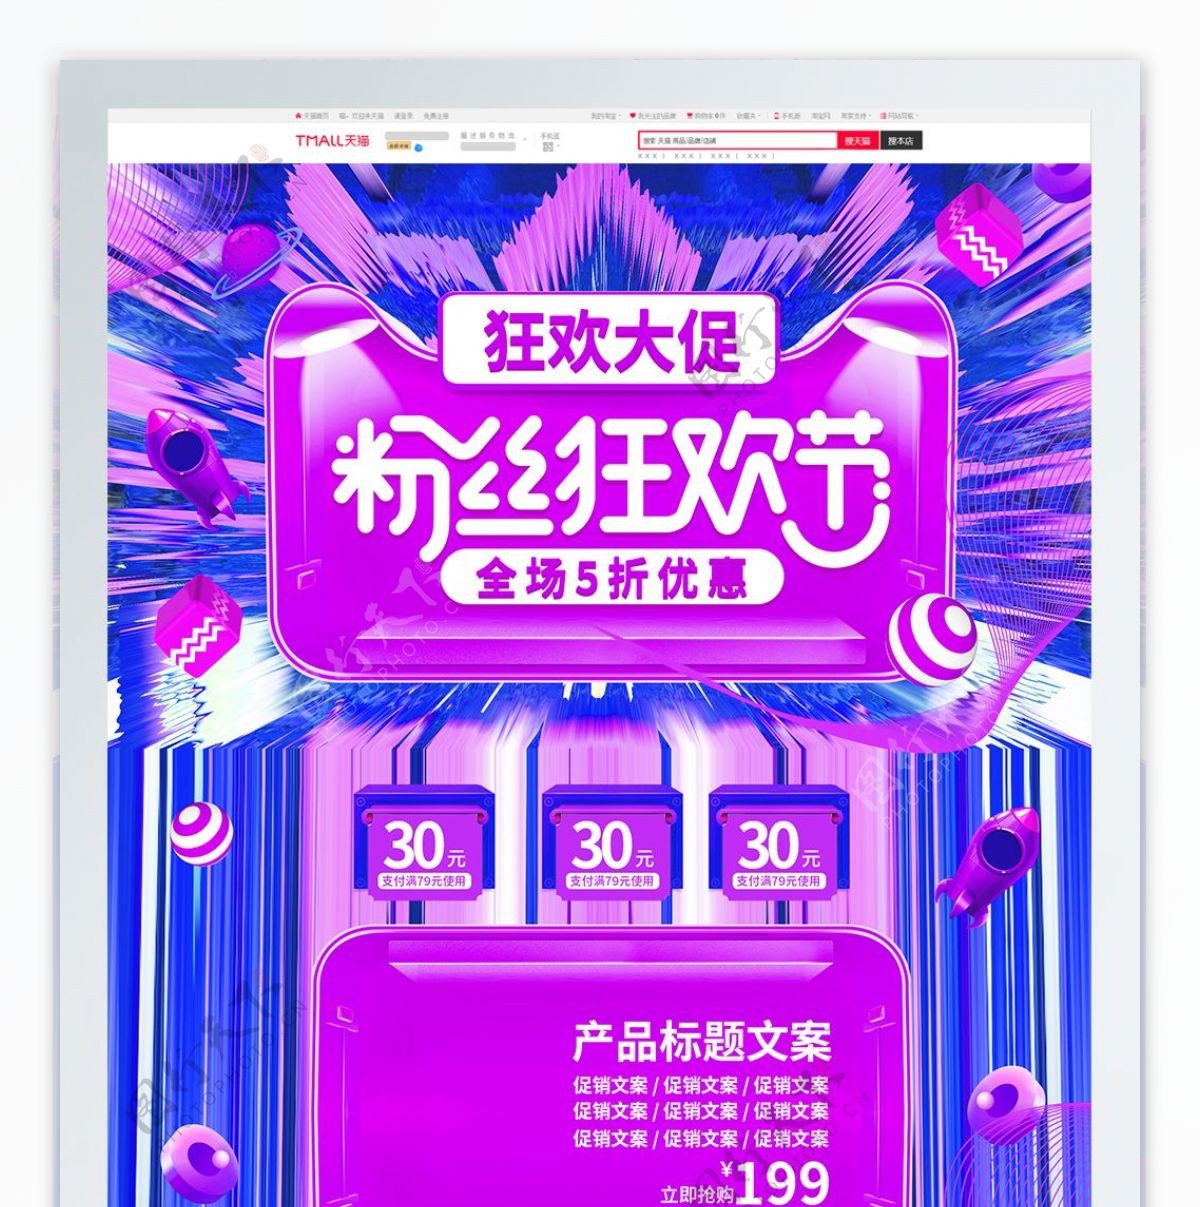 炫酷光线粉丝狂欢节优惠促销电商首页模板